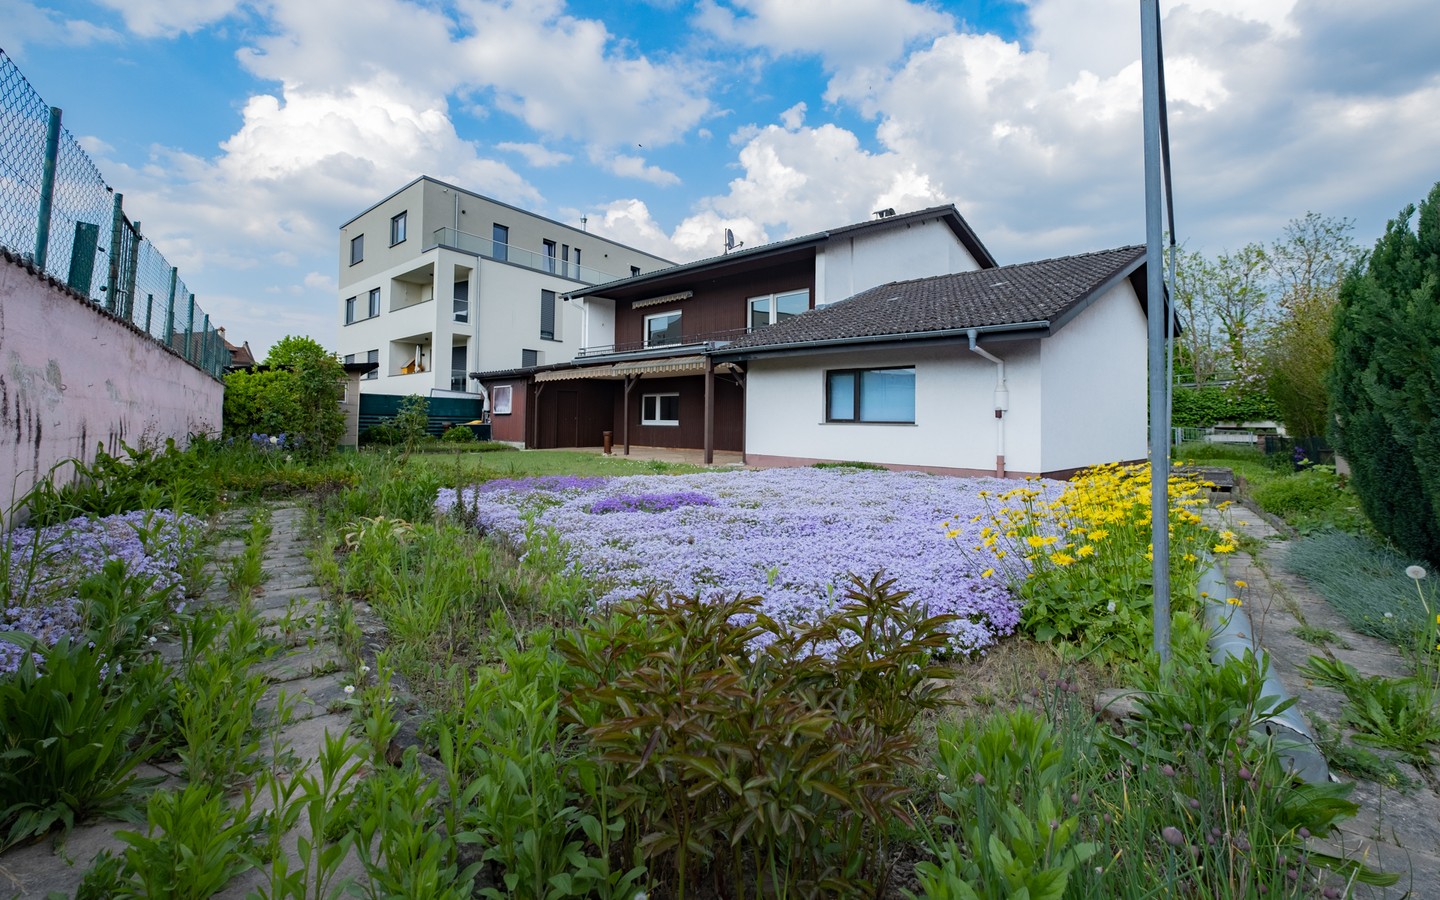 Garten - Leimen: freistehendes Haus in Splitlevelbauweise, mit 2 Garagen, 2 Stellplätzen und Garten